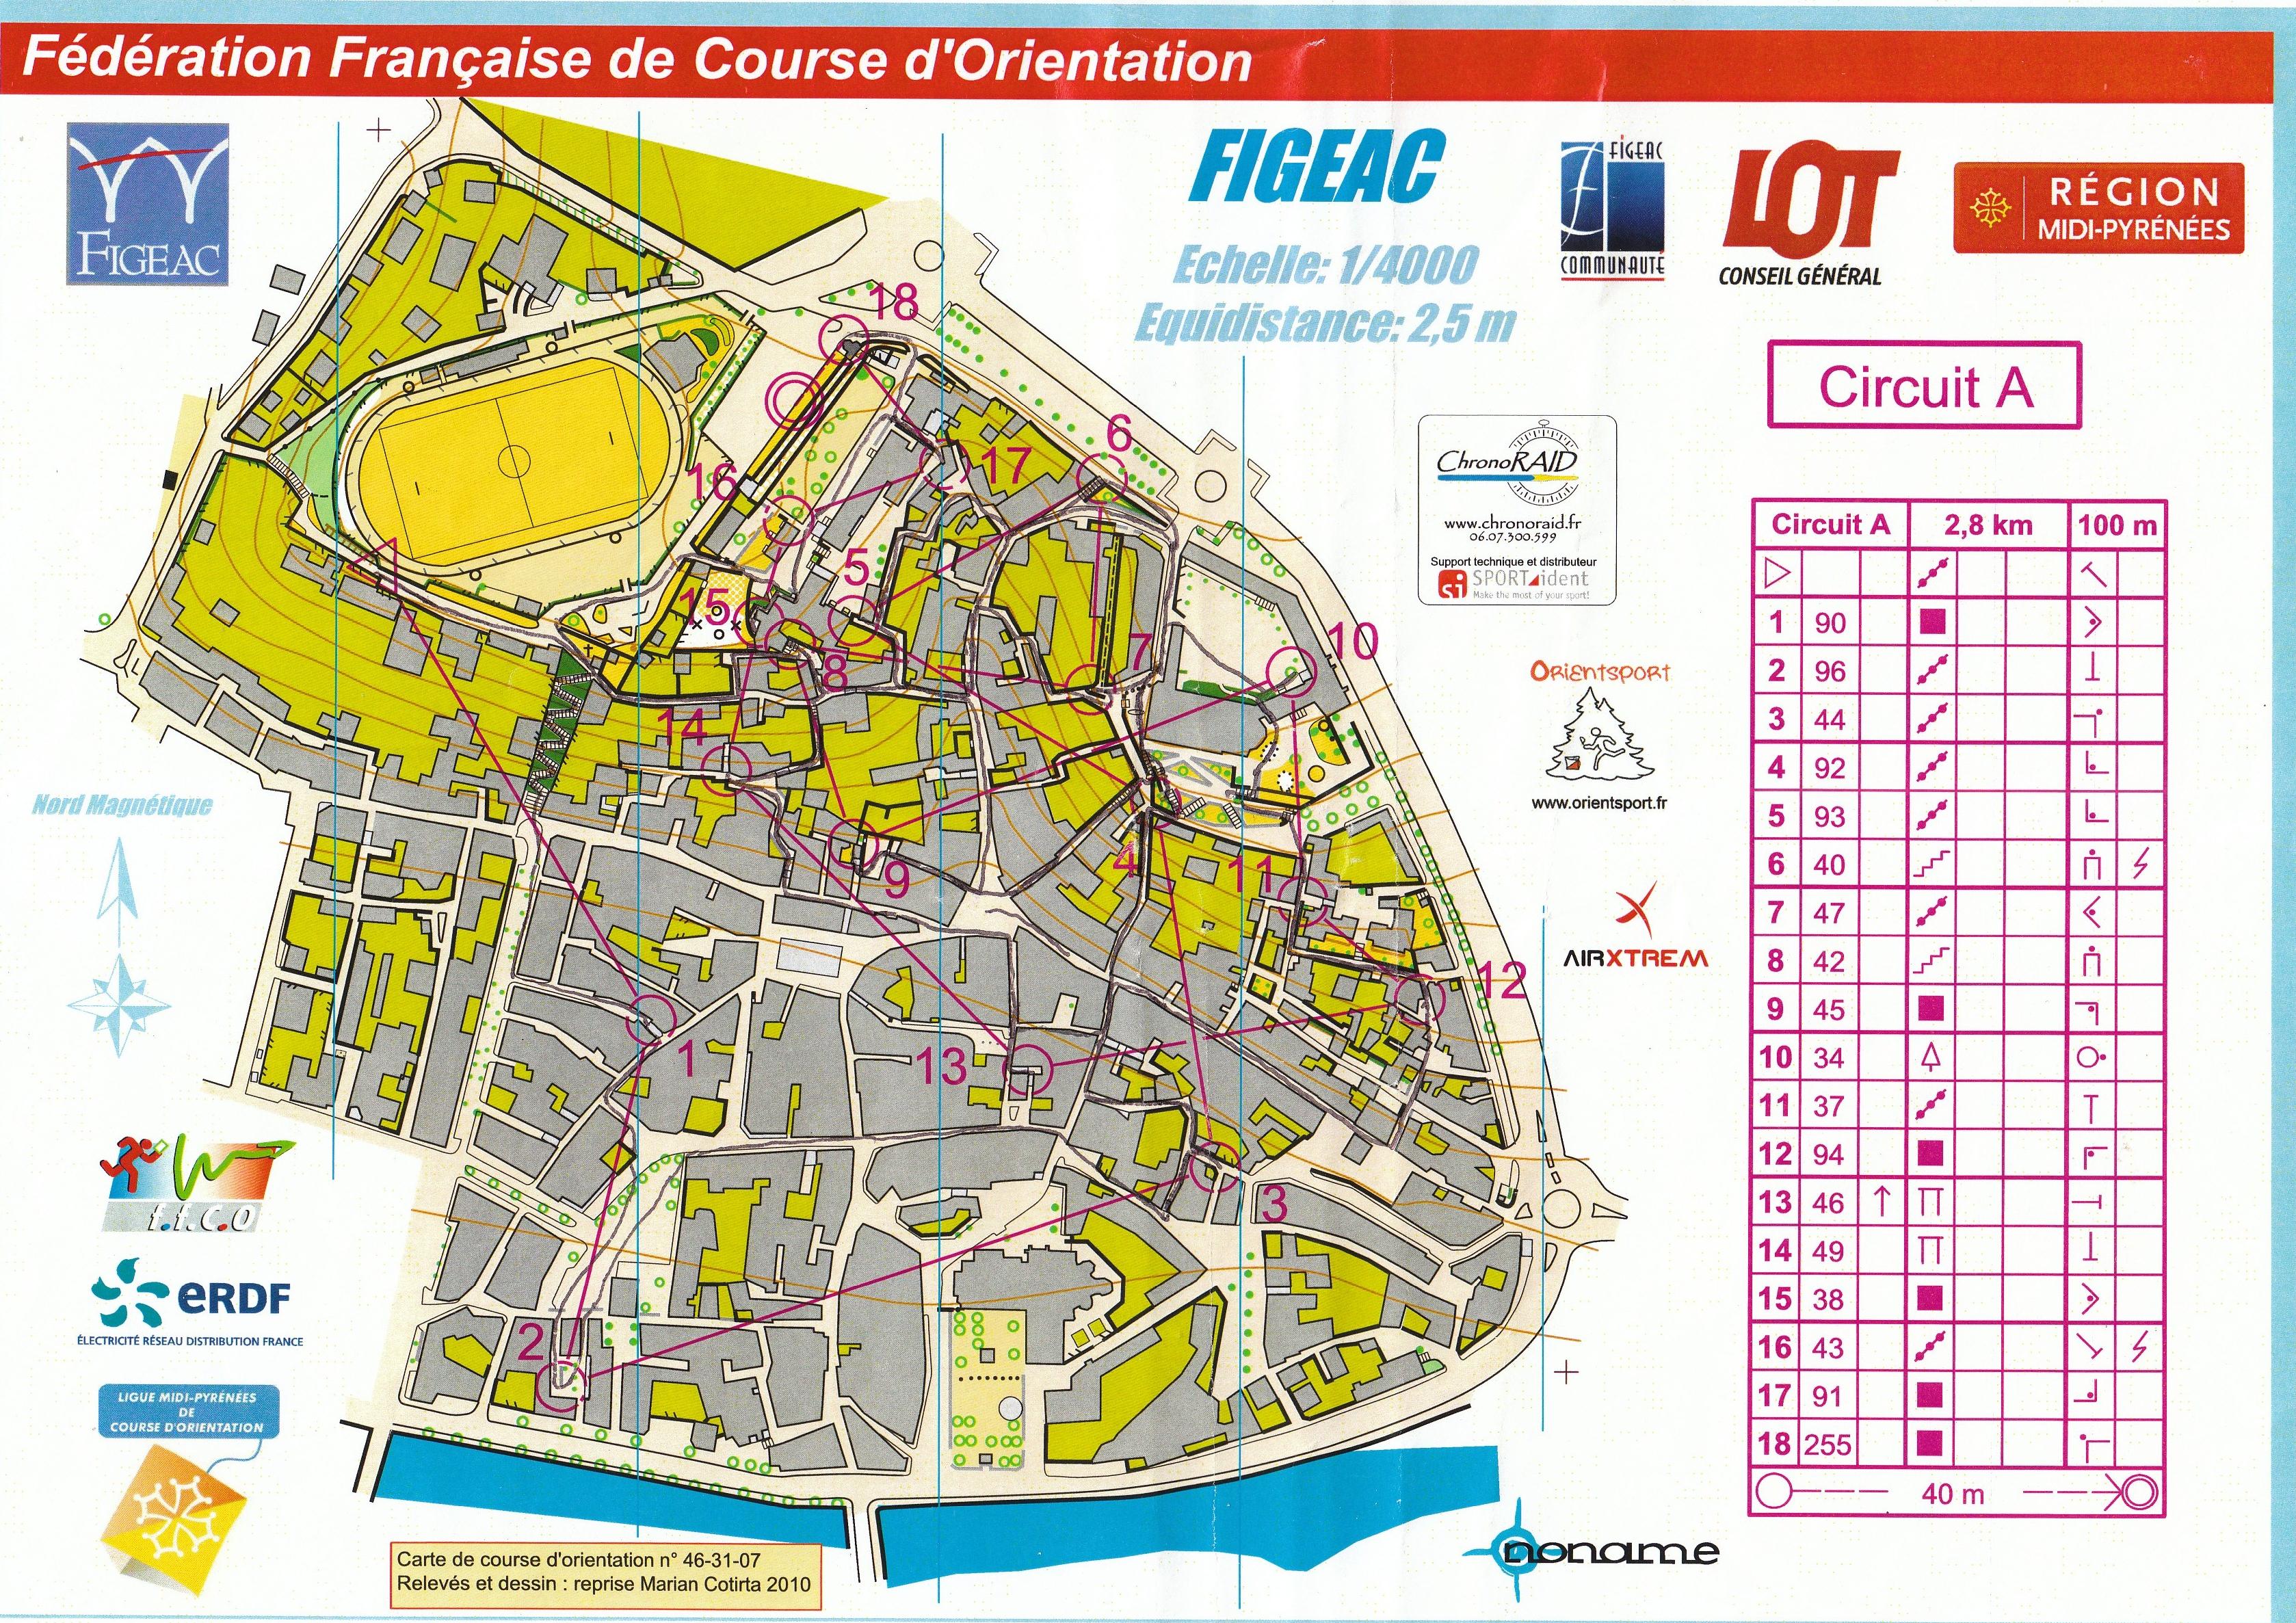 Open Sprint (Finale Championnat de France) (30/10/2010)